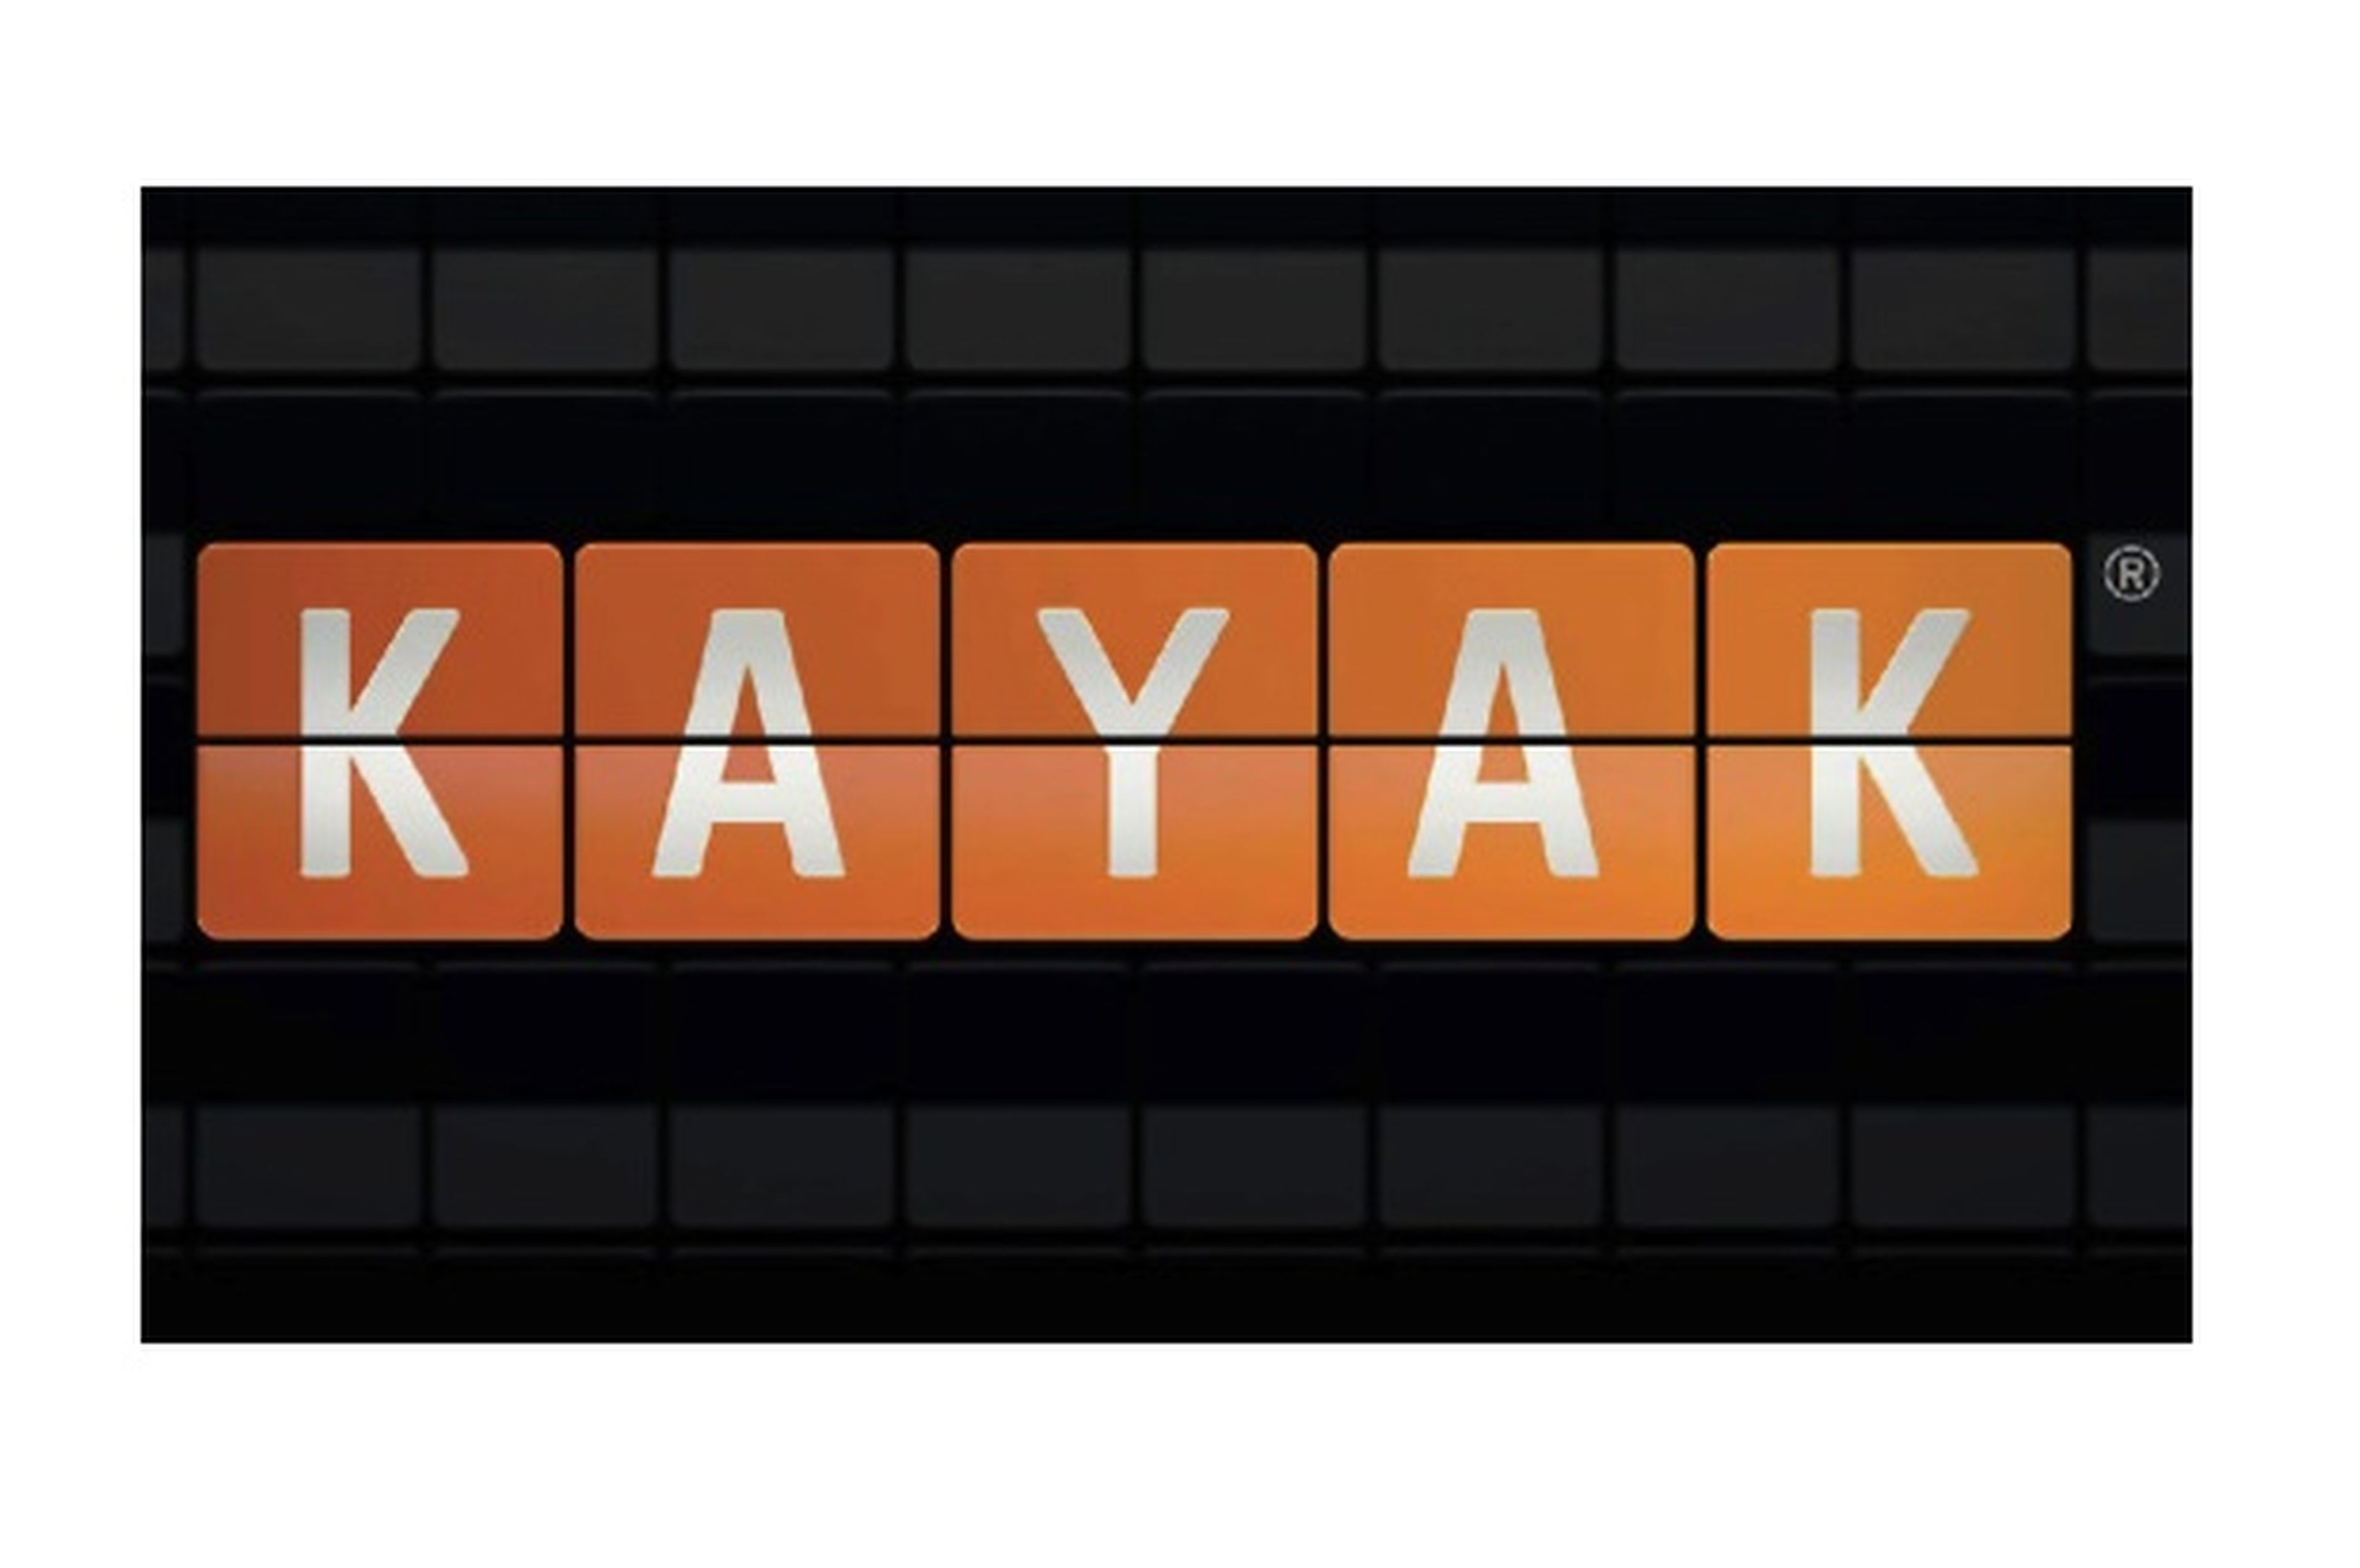 Busca vuelos al mejor precio en Kayak